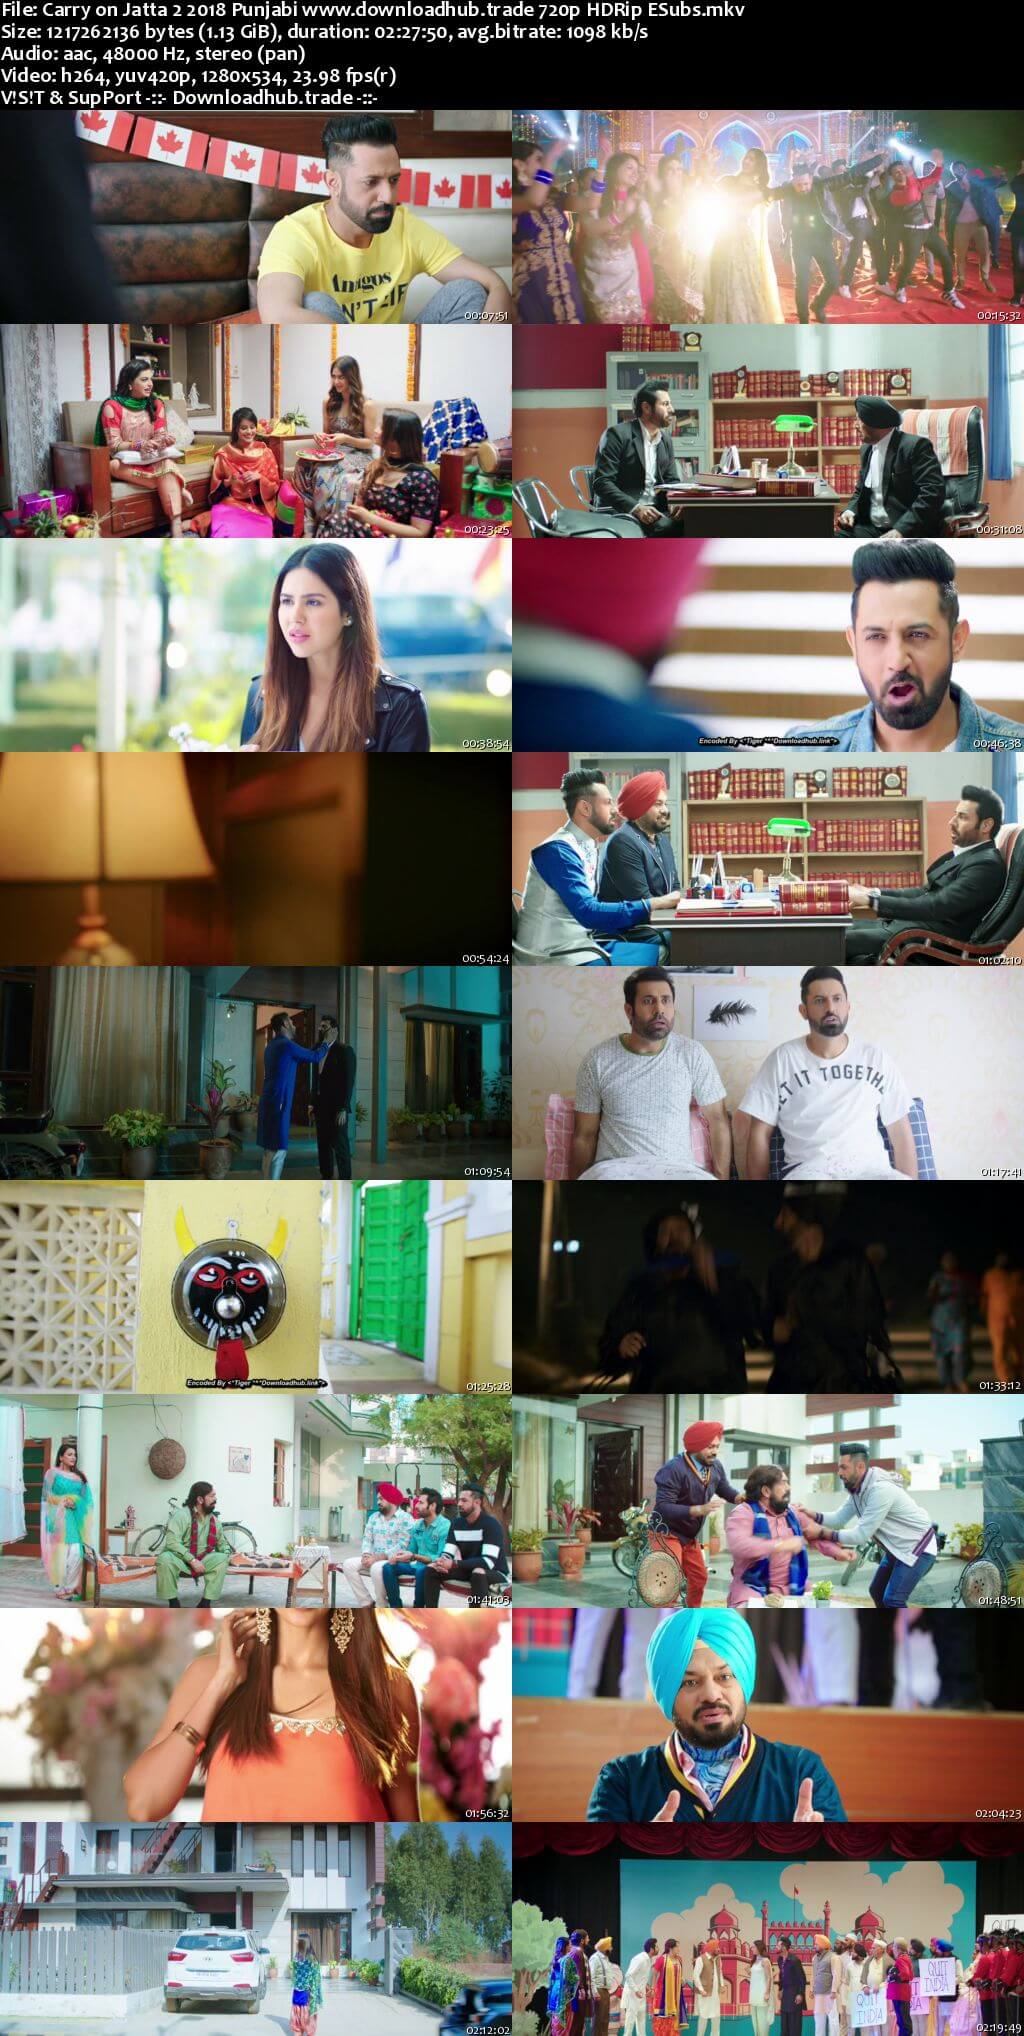 Carry on Jatta 2 2018 Punjabi 720p HDRip ESubs